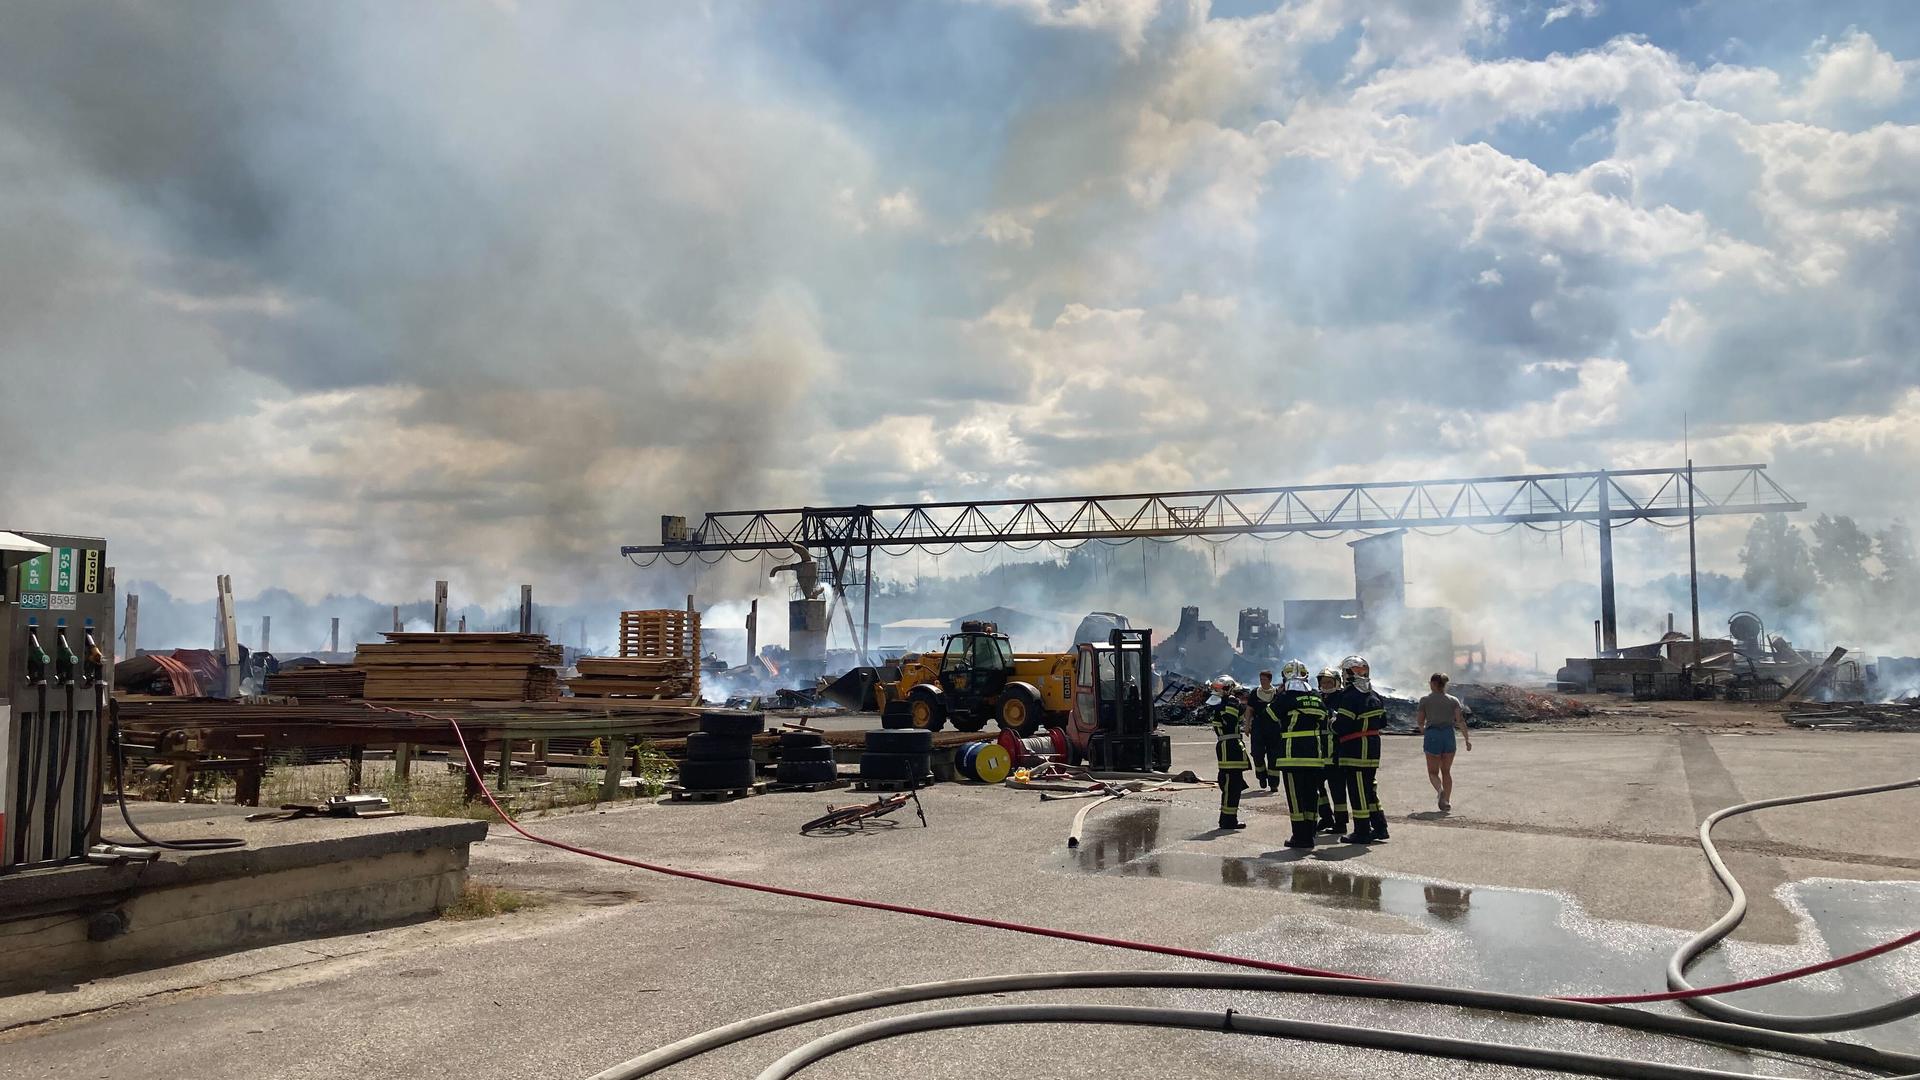 Etwa 100 Einsatzkräfte der französischen Feuerwehr sind noch im Einsatz, um die Flammen zu löschen. Auch aus Baden-Baden und Karlsruhe kam Unterstützung herbeigeeilt.